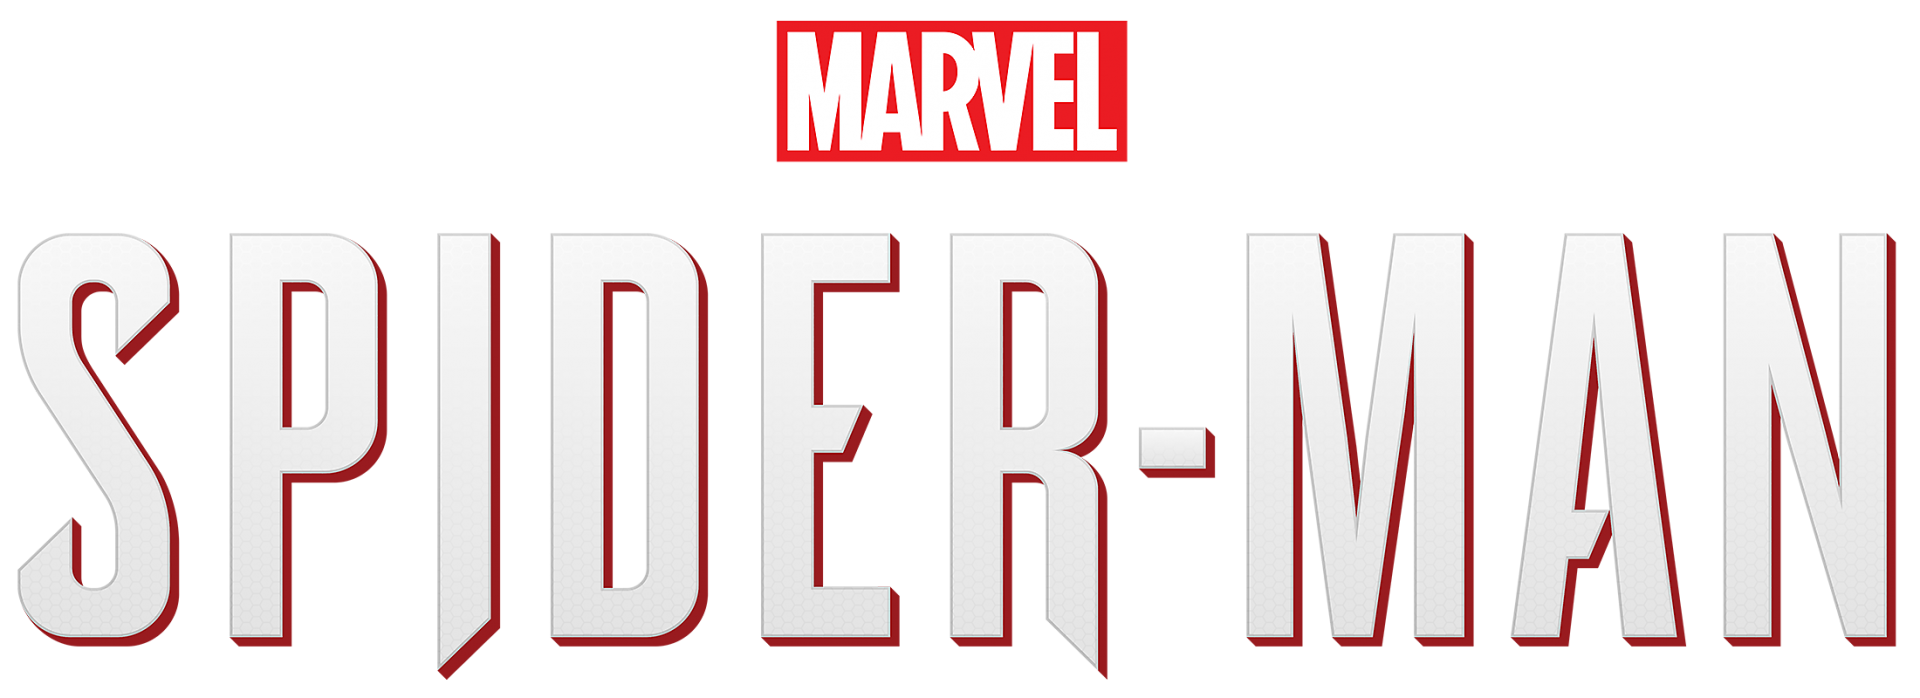 Marvel spider man logo